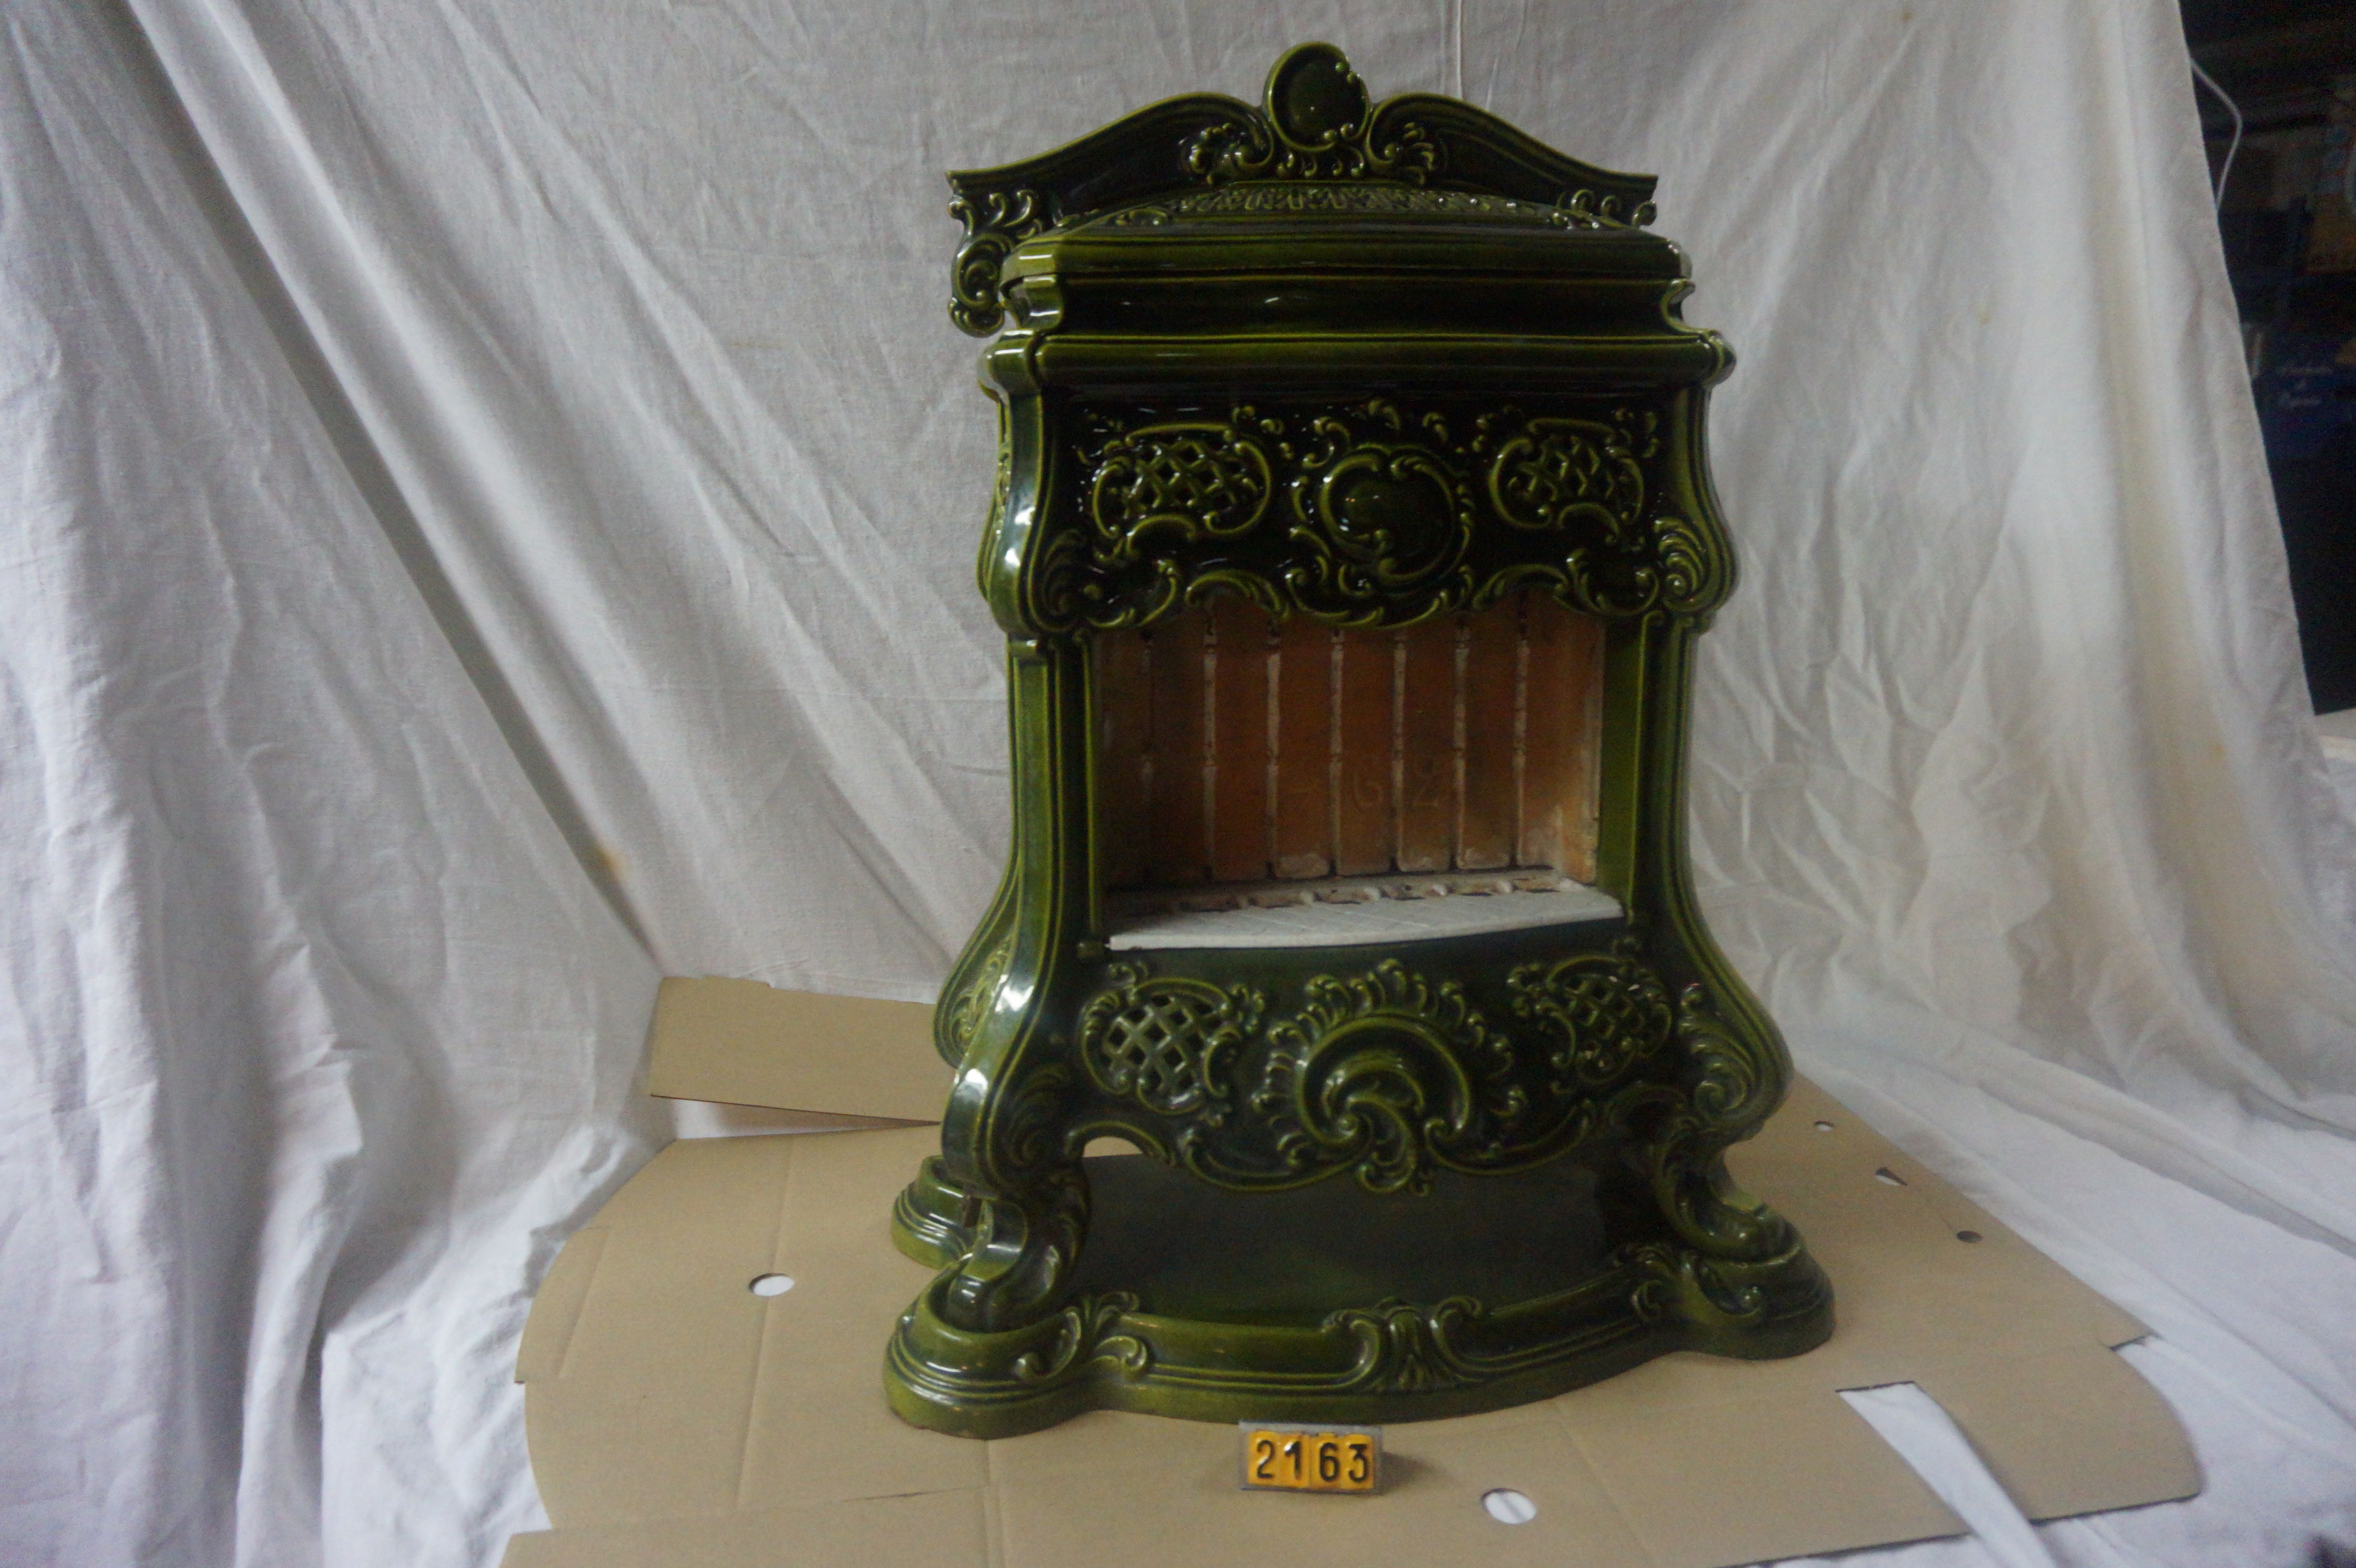  Collection ASPEG, pièce numéro 2163 : radiateur chauffage avec bougies vert fonte emaille